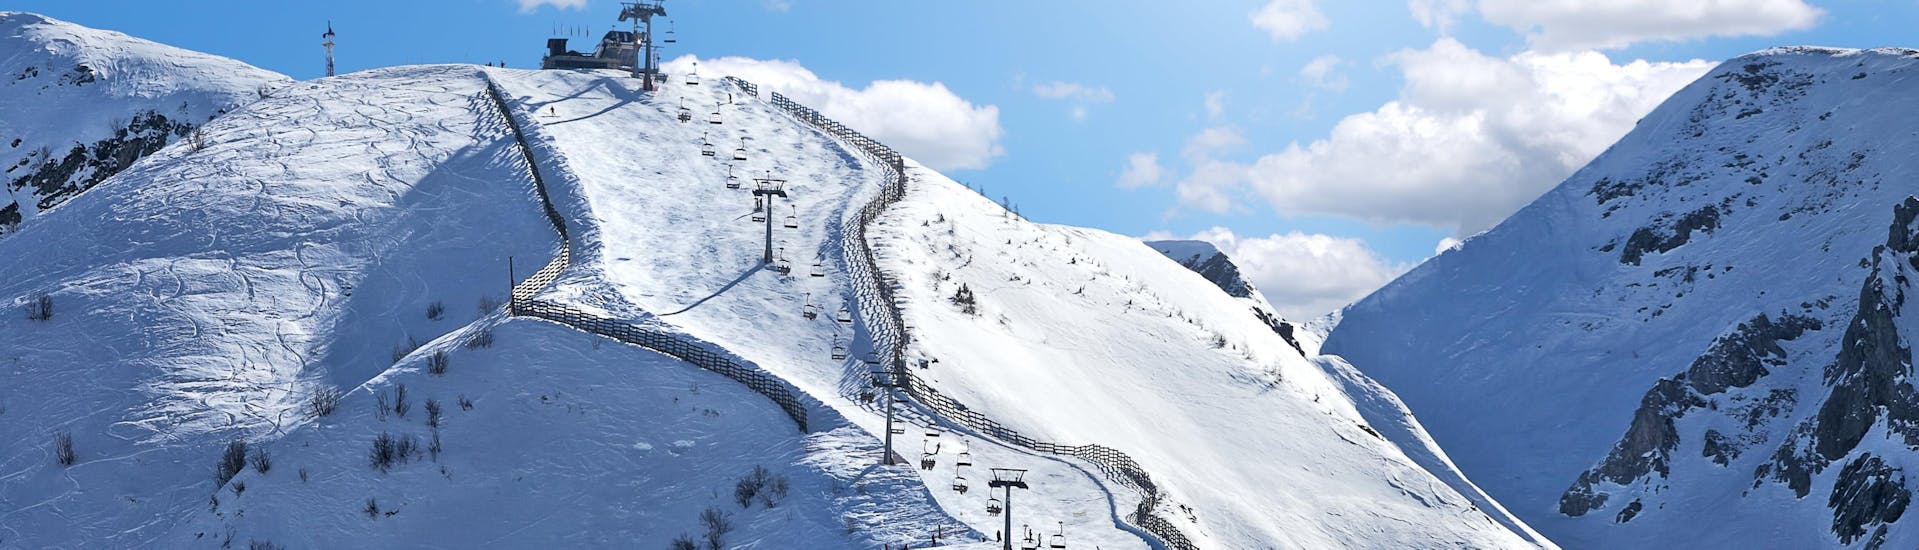 Blick auf die sonnigen Pisten des Skigebiets in Limone Piemonte, wo örtliche Skischulen ihre Skikurse anbieten.